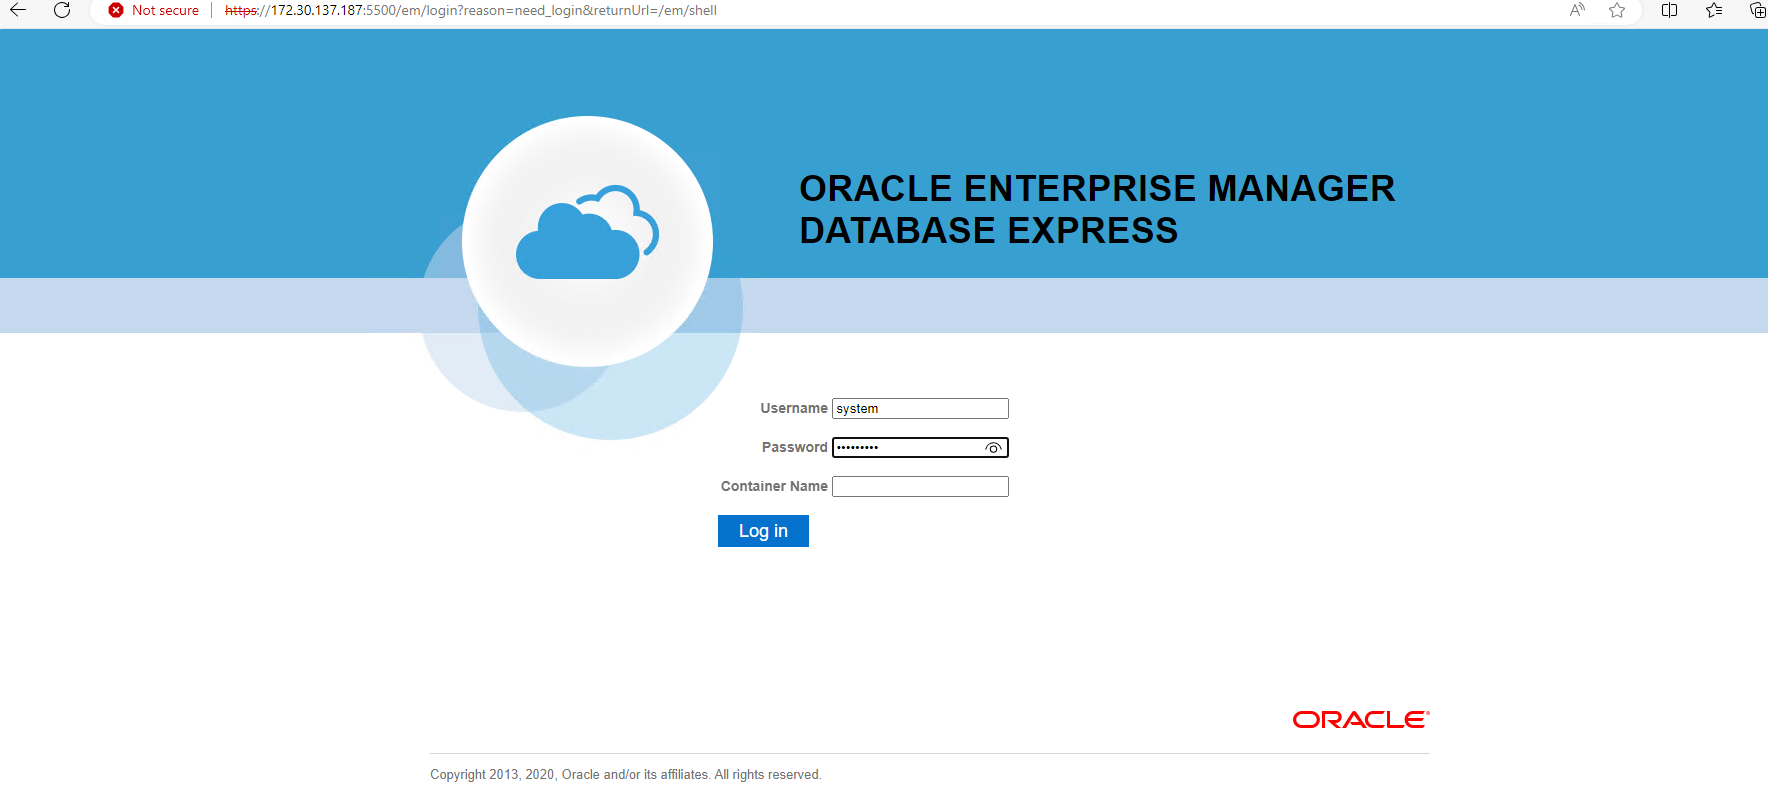 このイメージは、Oracle Enterprise Manager Expressのログイン画面を示しています。